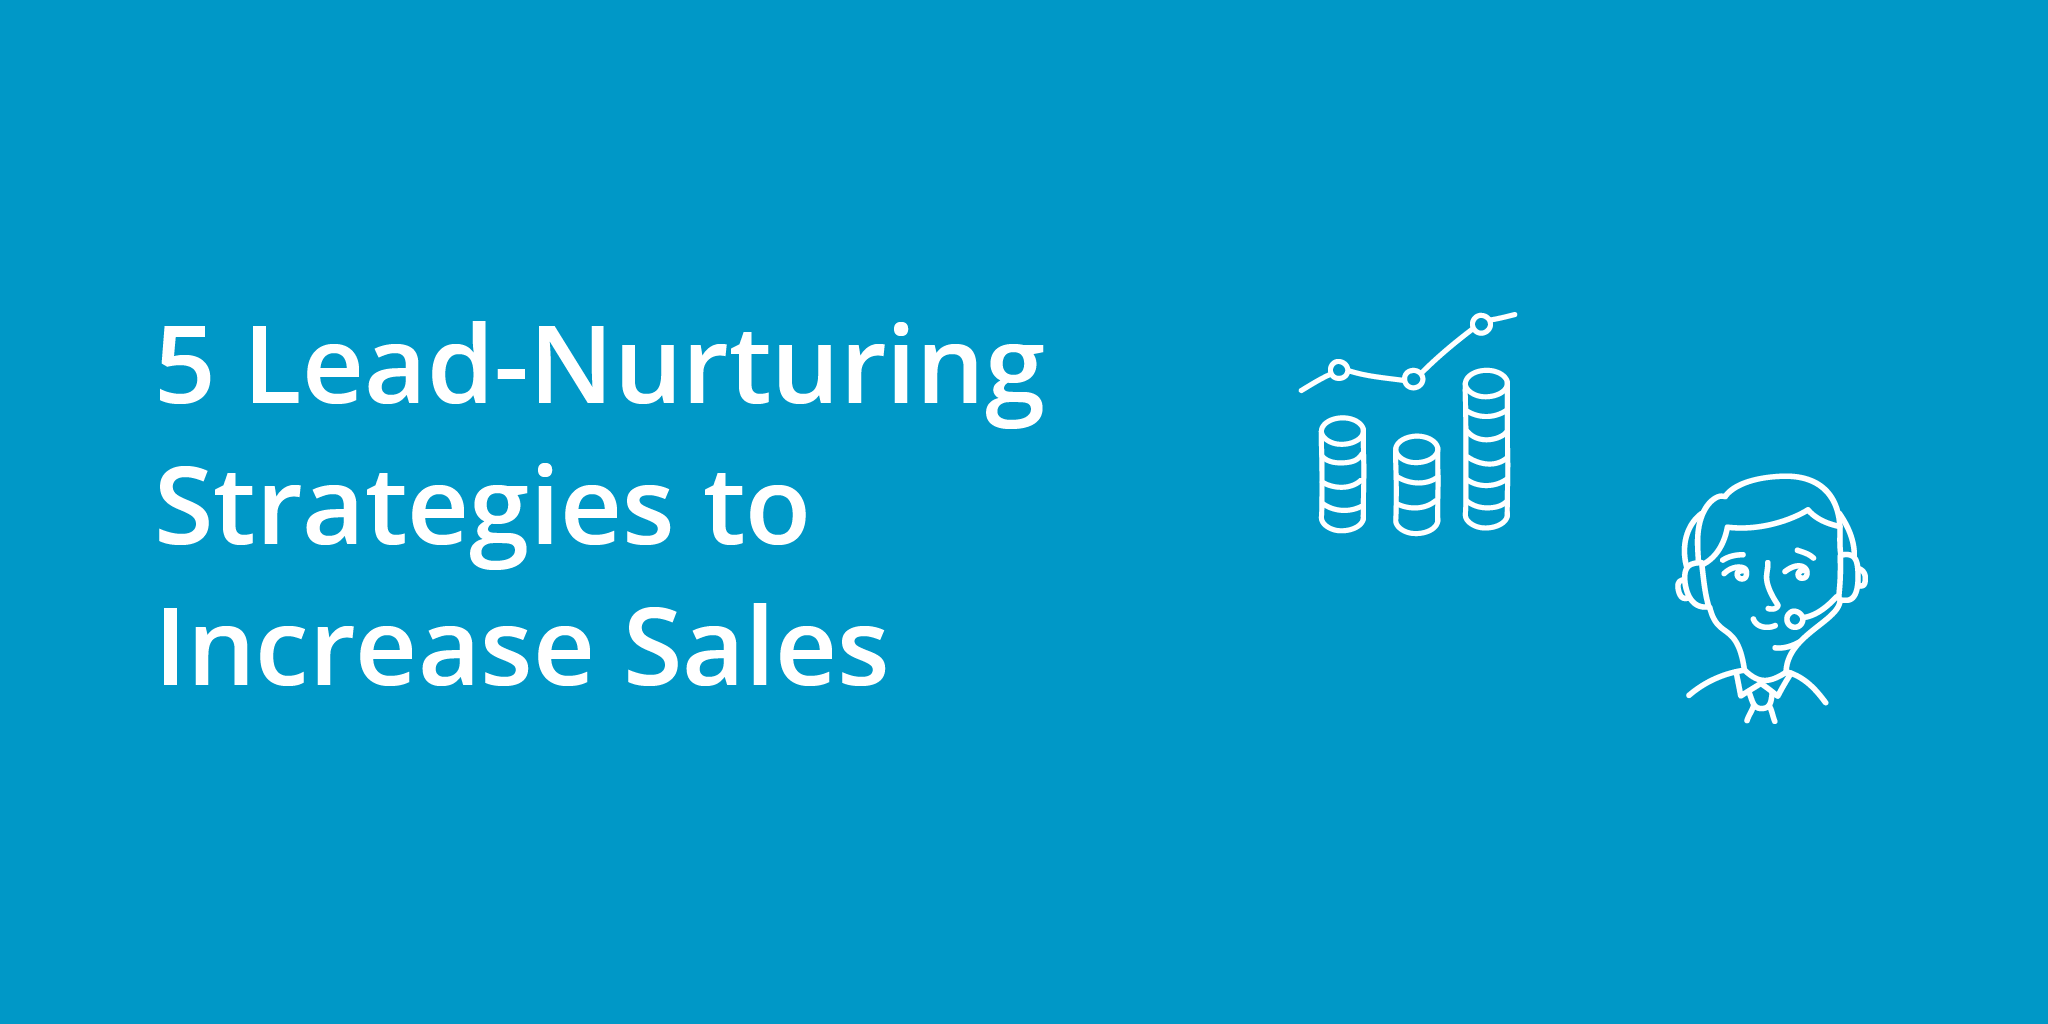 5 Lead-Nurturing Strategies to Increase Sales